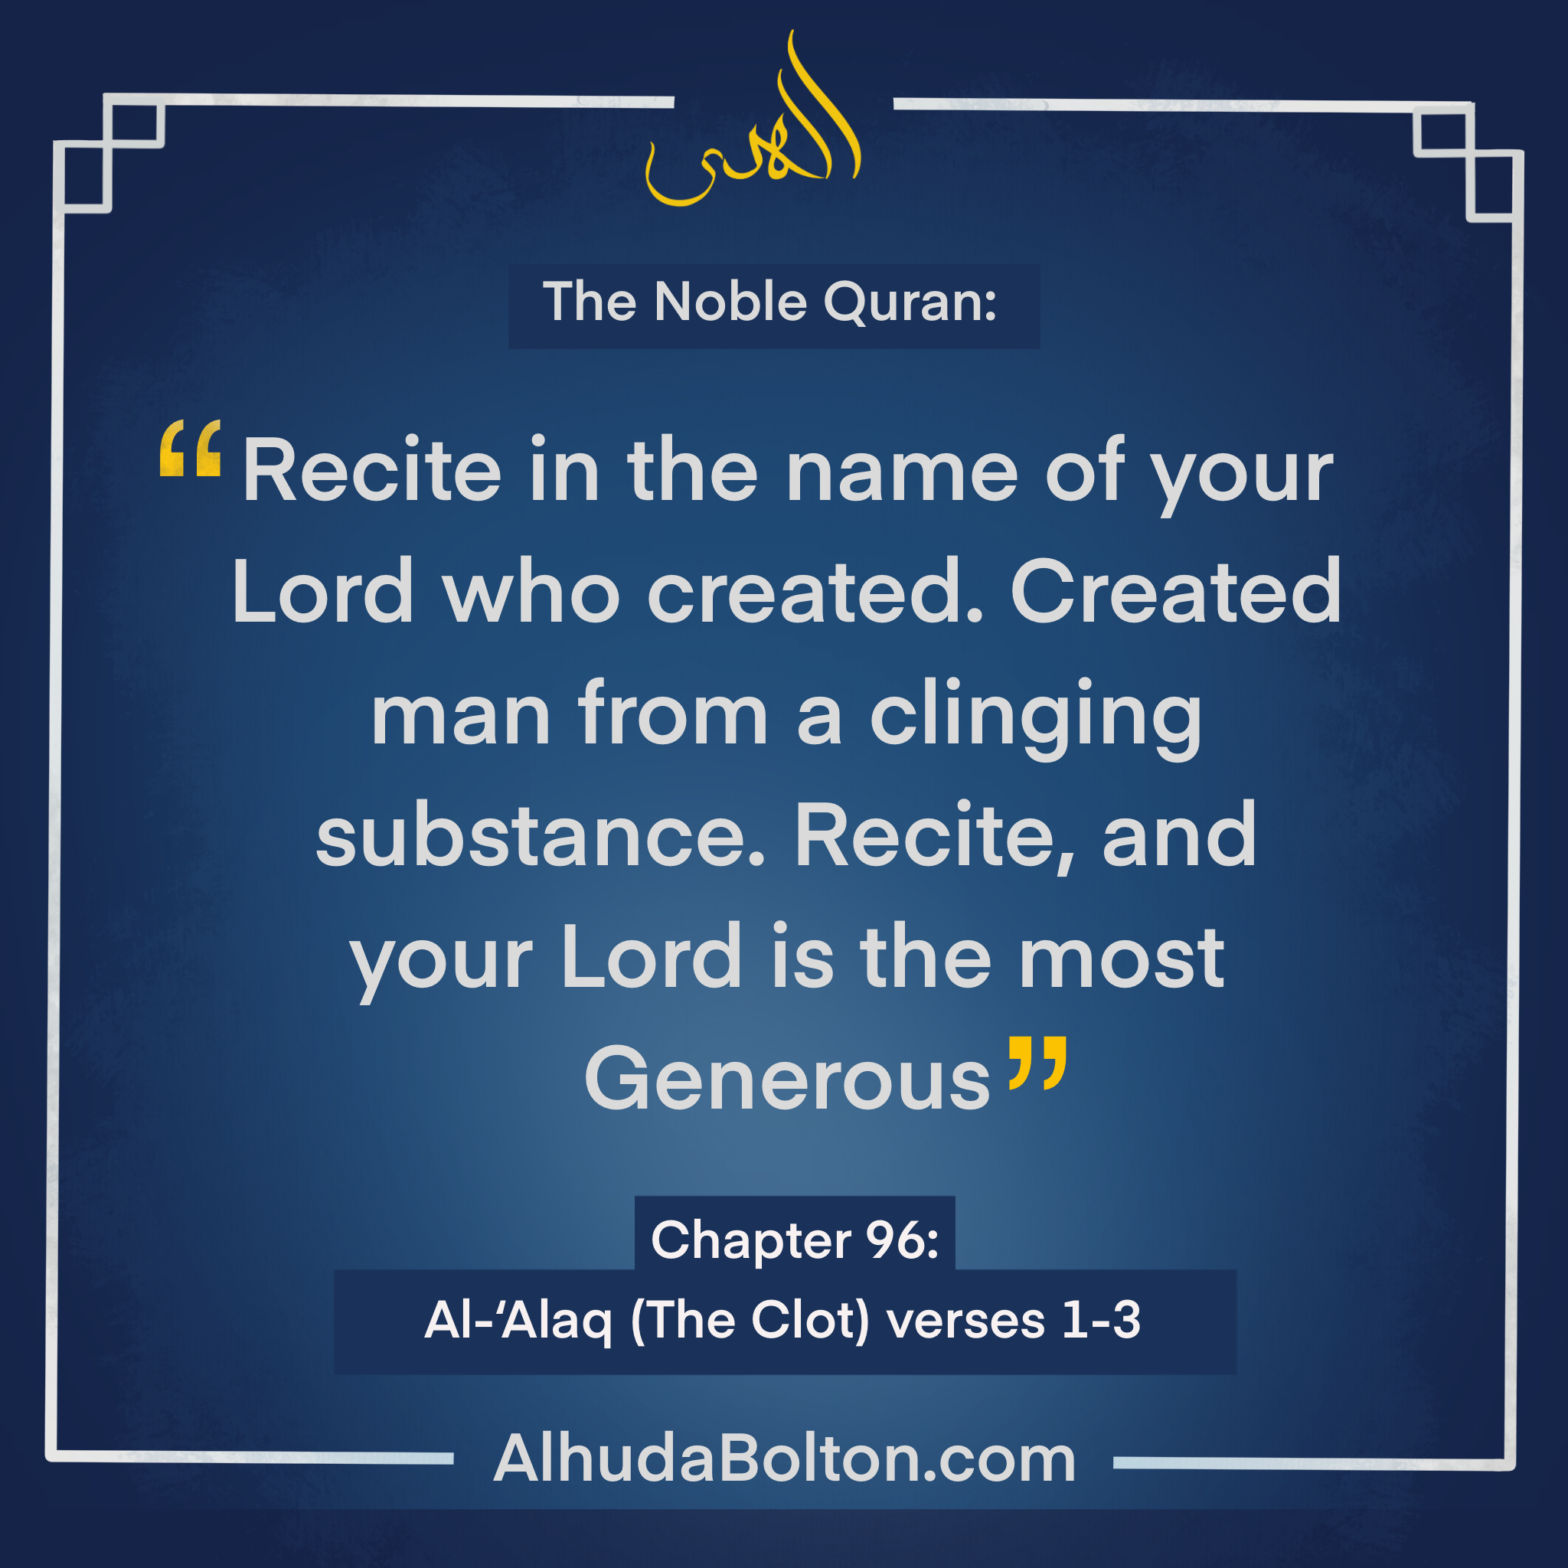 Quran: The Beginning